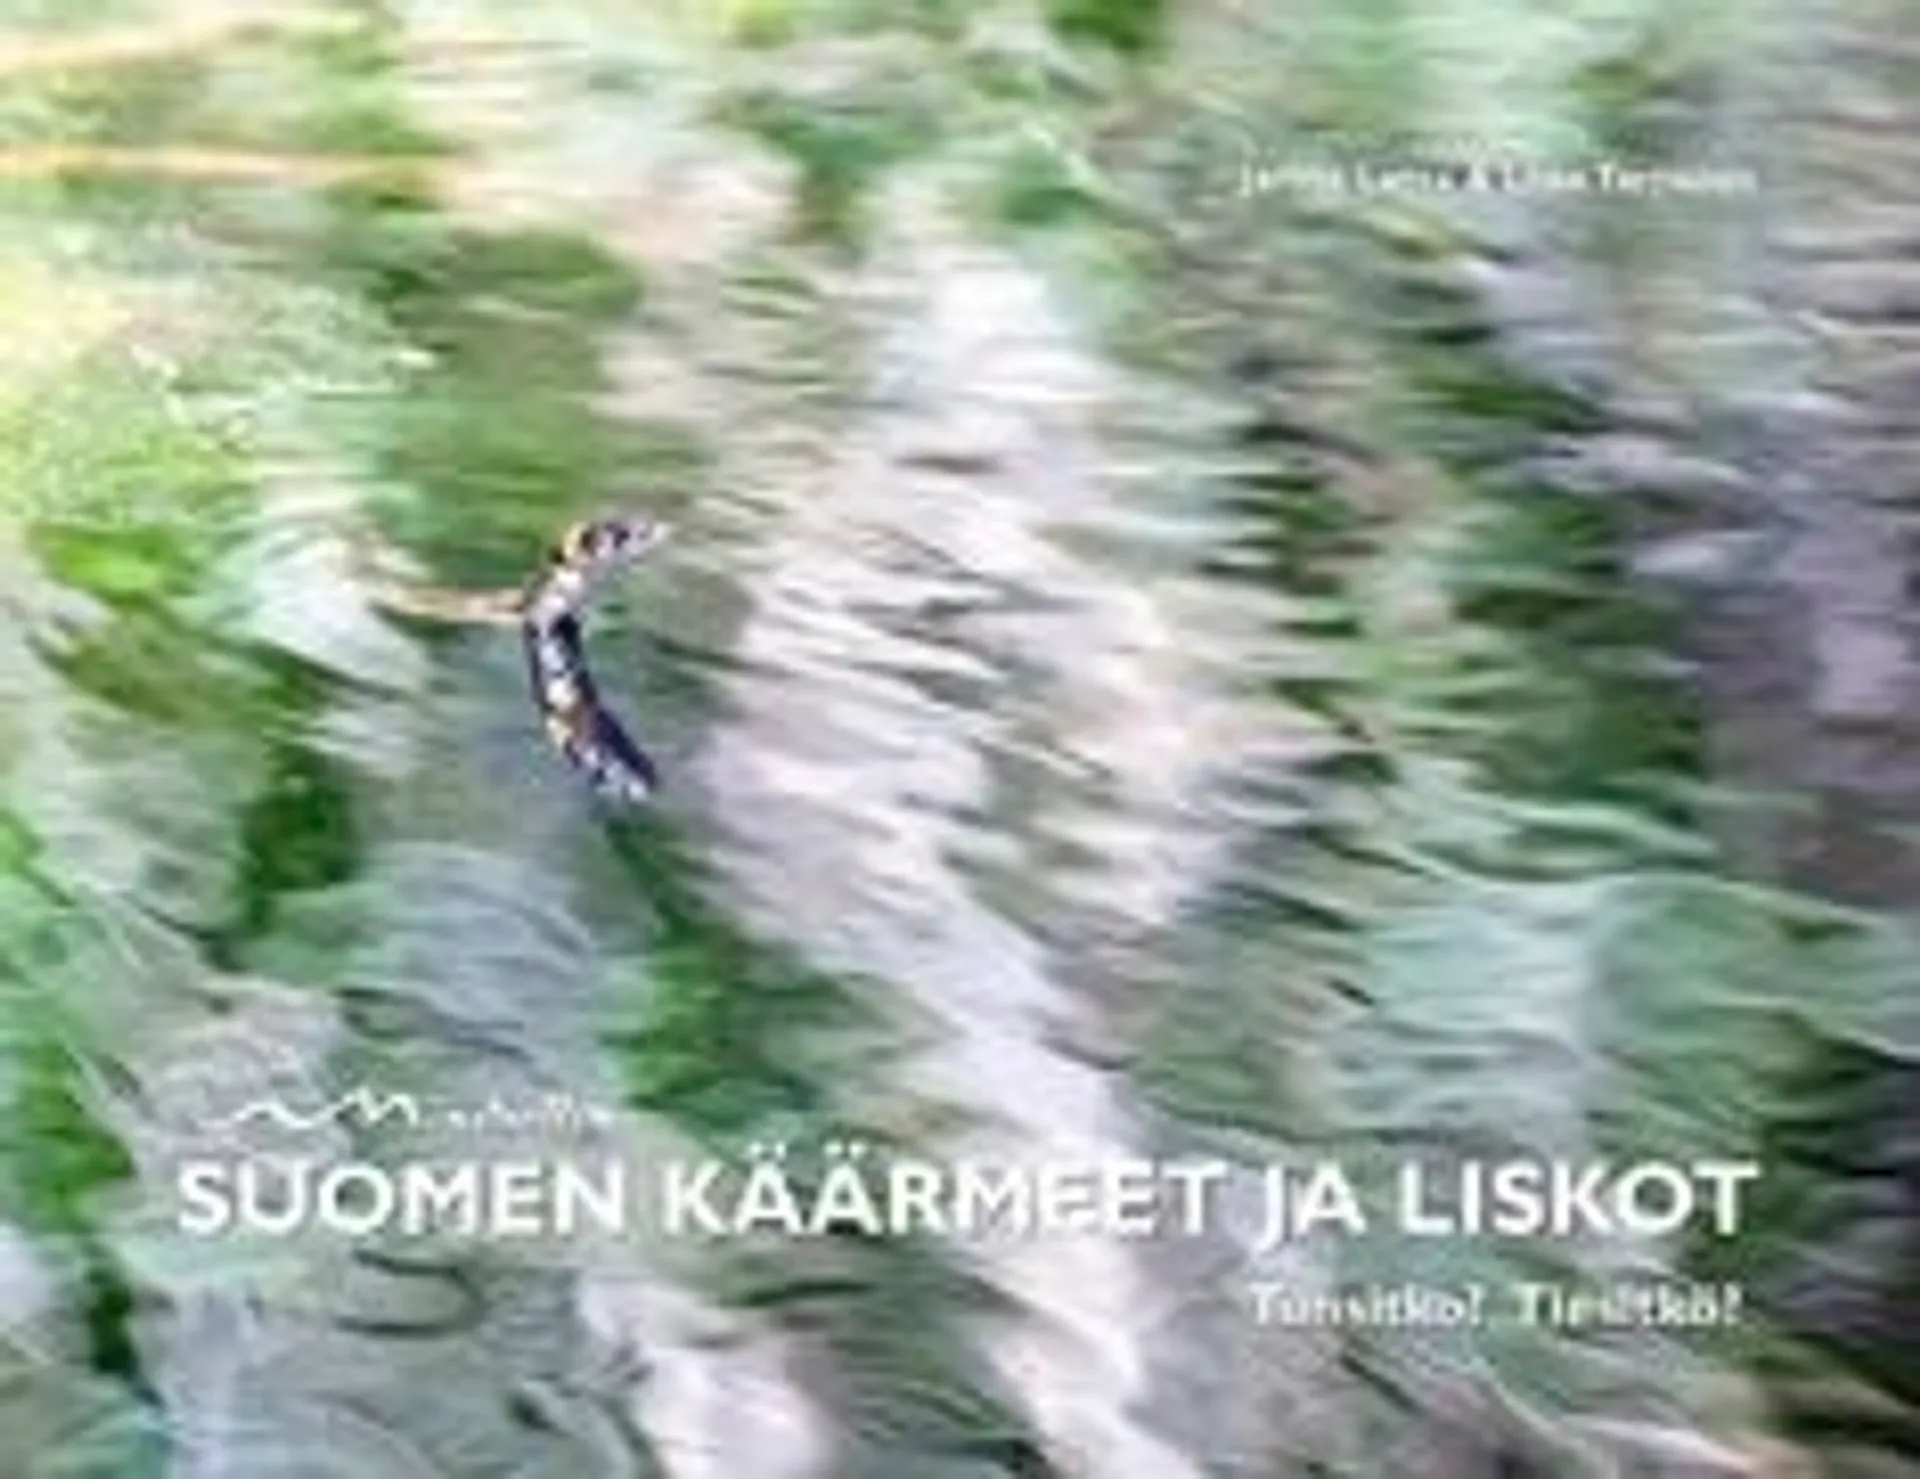 Latva, Suomen käärmeet ja liskot - Tunsitko? Tiesitkö?